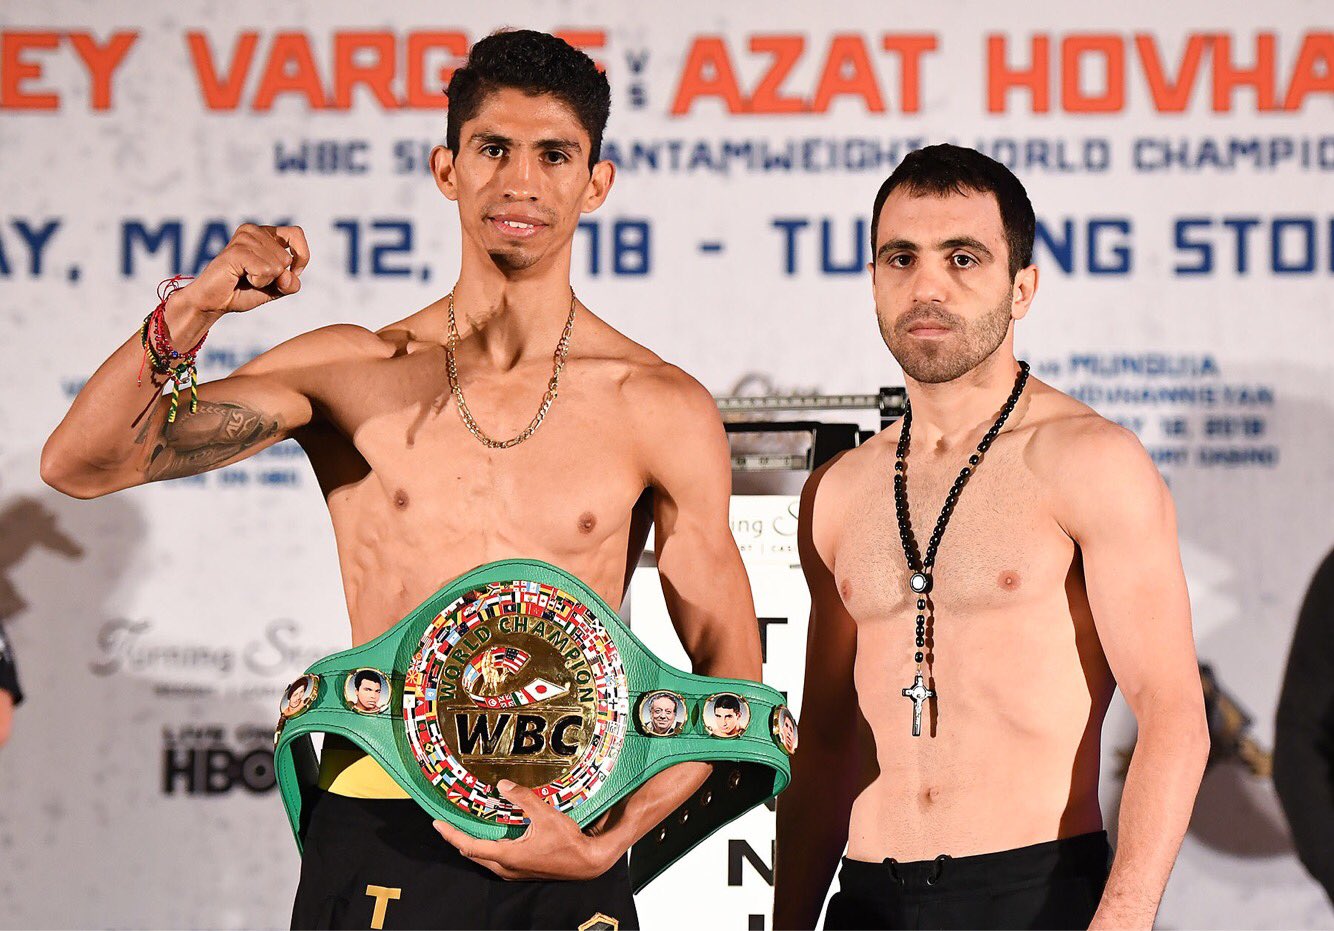 Rey Vargas y Azat Hovhannisyan fueron los segundos peleadores que enfrentaron a Nacho y Freddie (Foto: Twitter/@UCNlive)